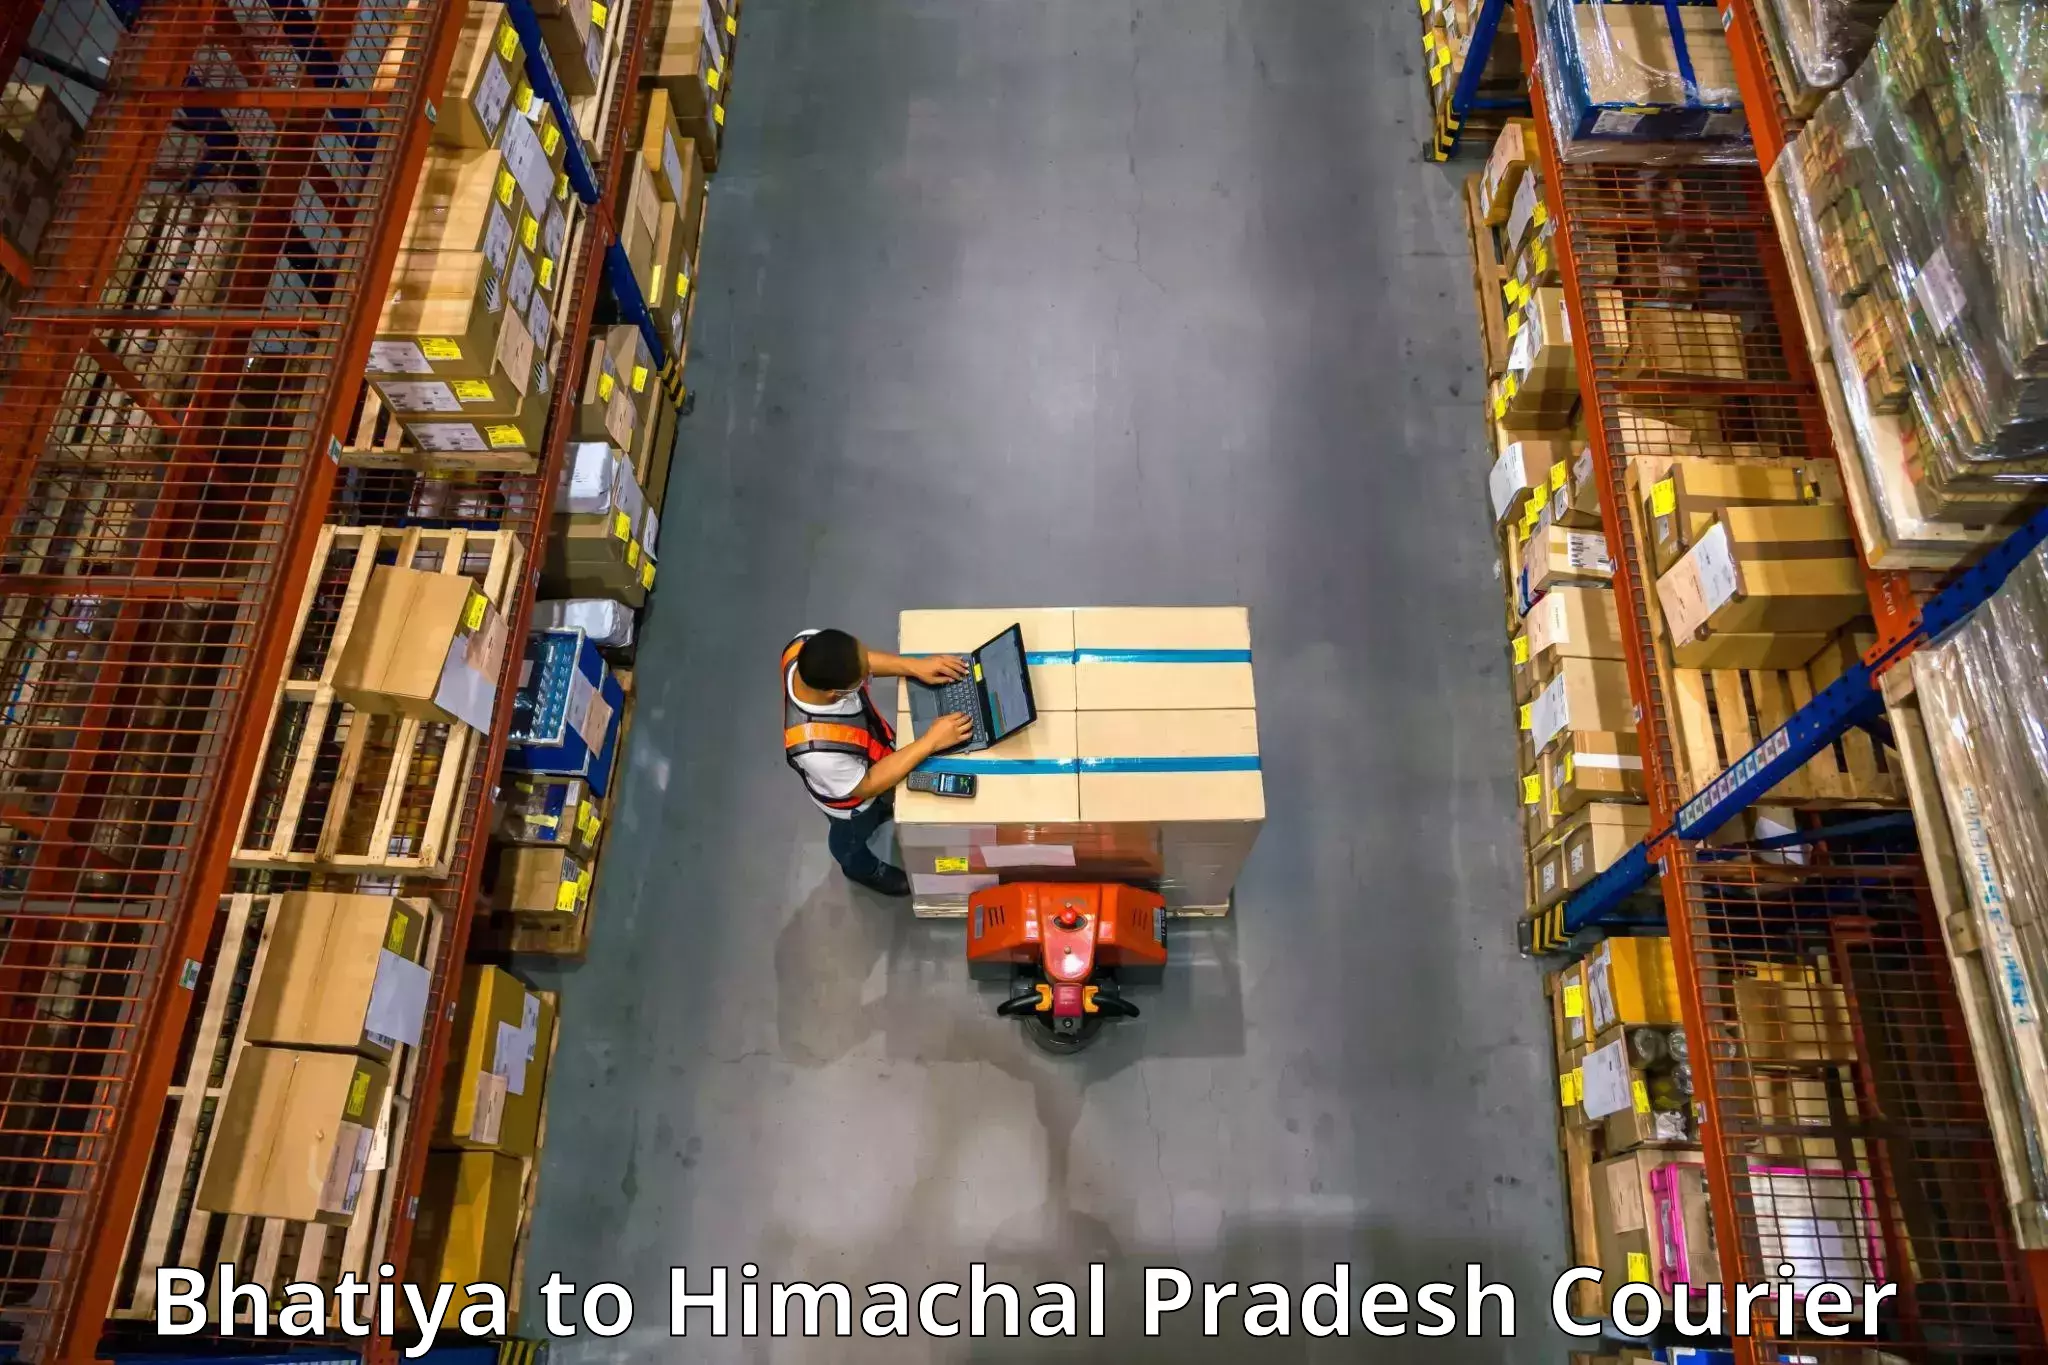 Furniture moving experts Bhatiya to Himachal Pradesh